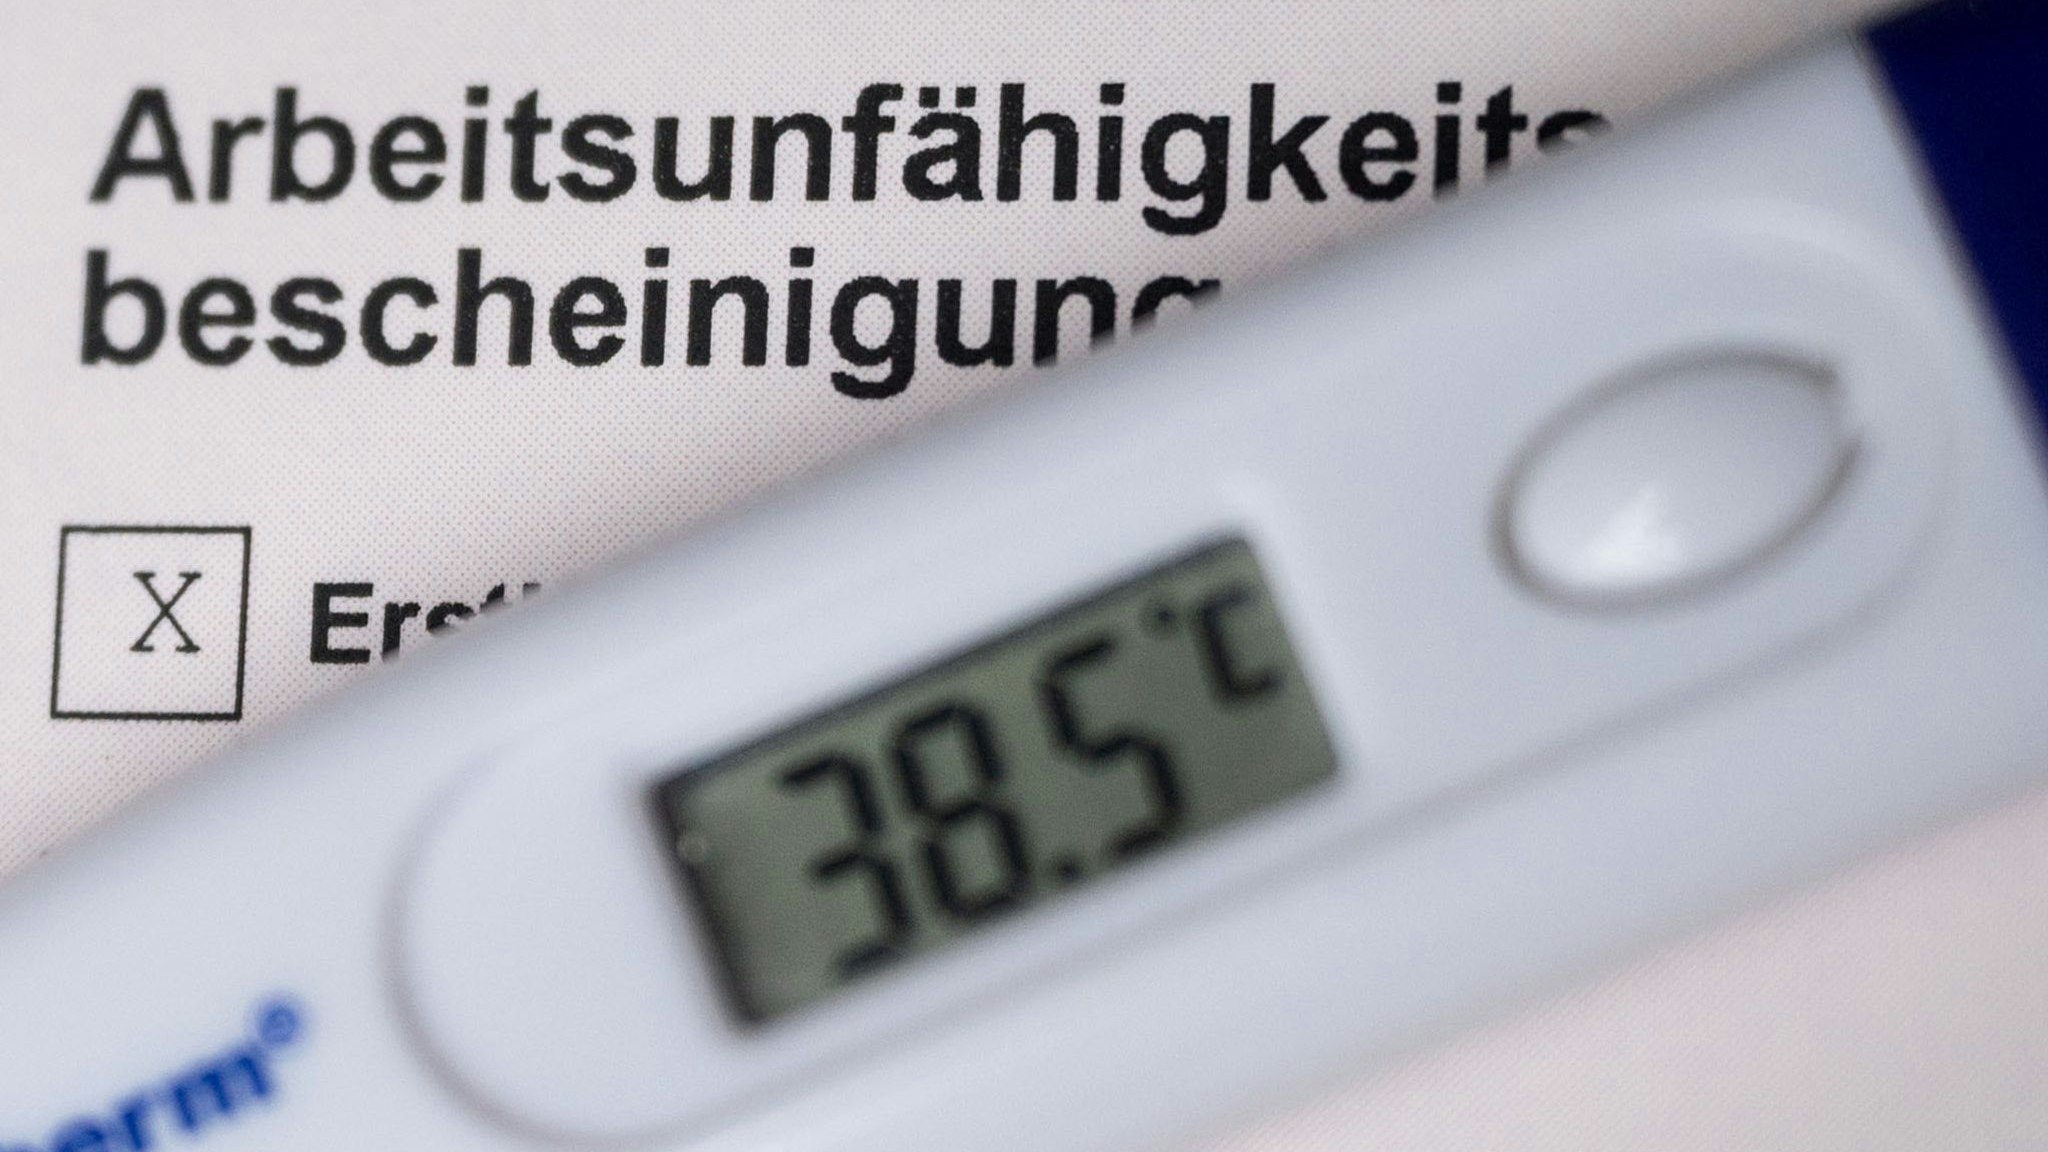 Ein Fieberthermometer liegt auf einer Arbeitsunfähigkeitsbescheinigung. Foto: dpa/Murat